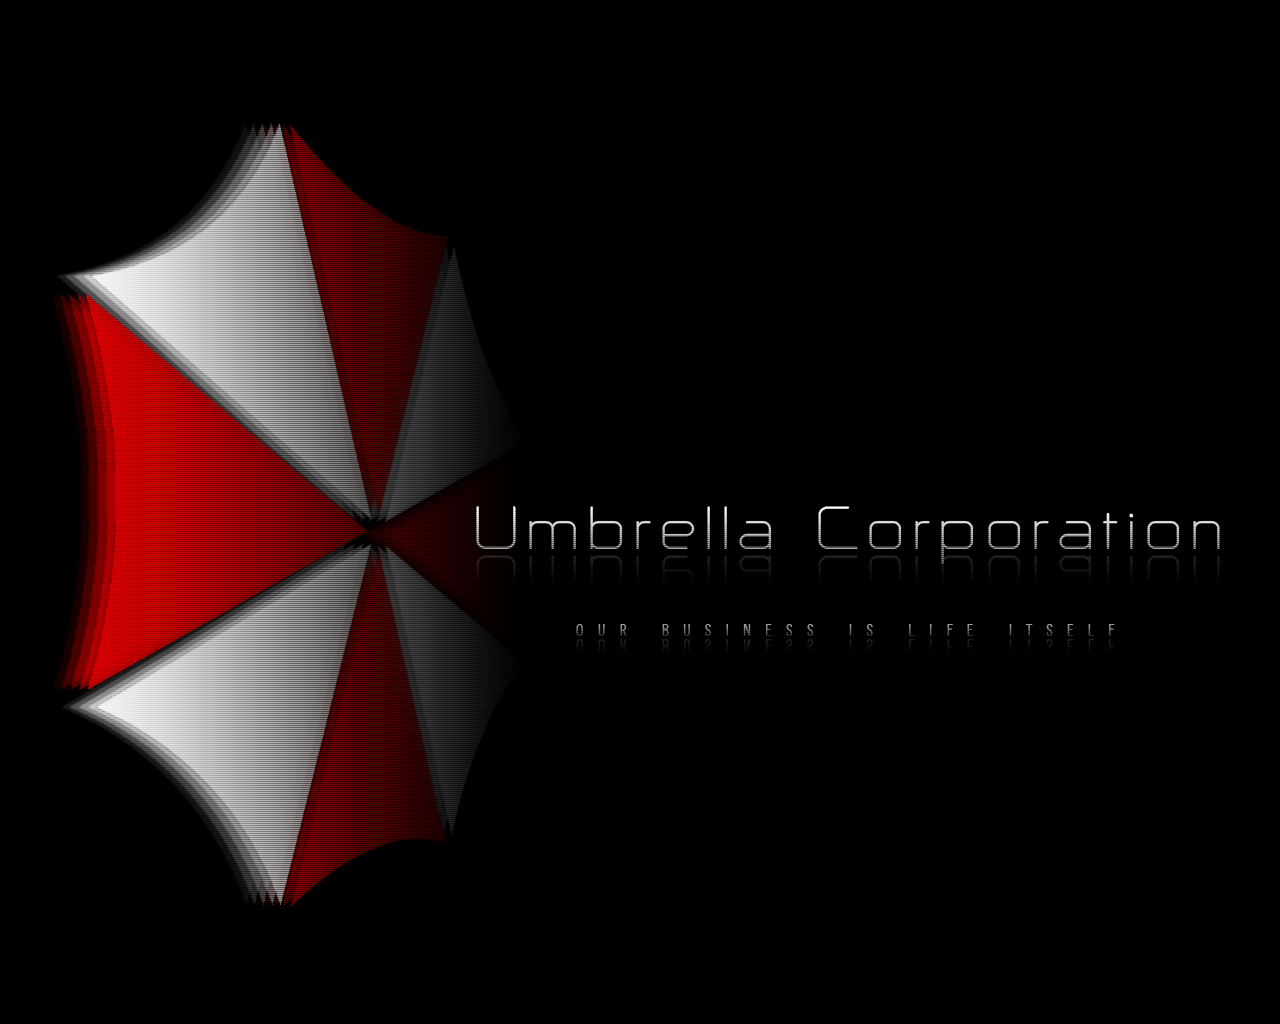  de Informacin   Wallpapers de Umbrella Corporation [una te llevas